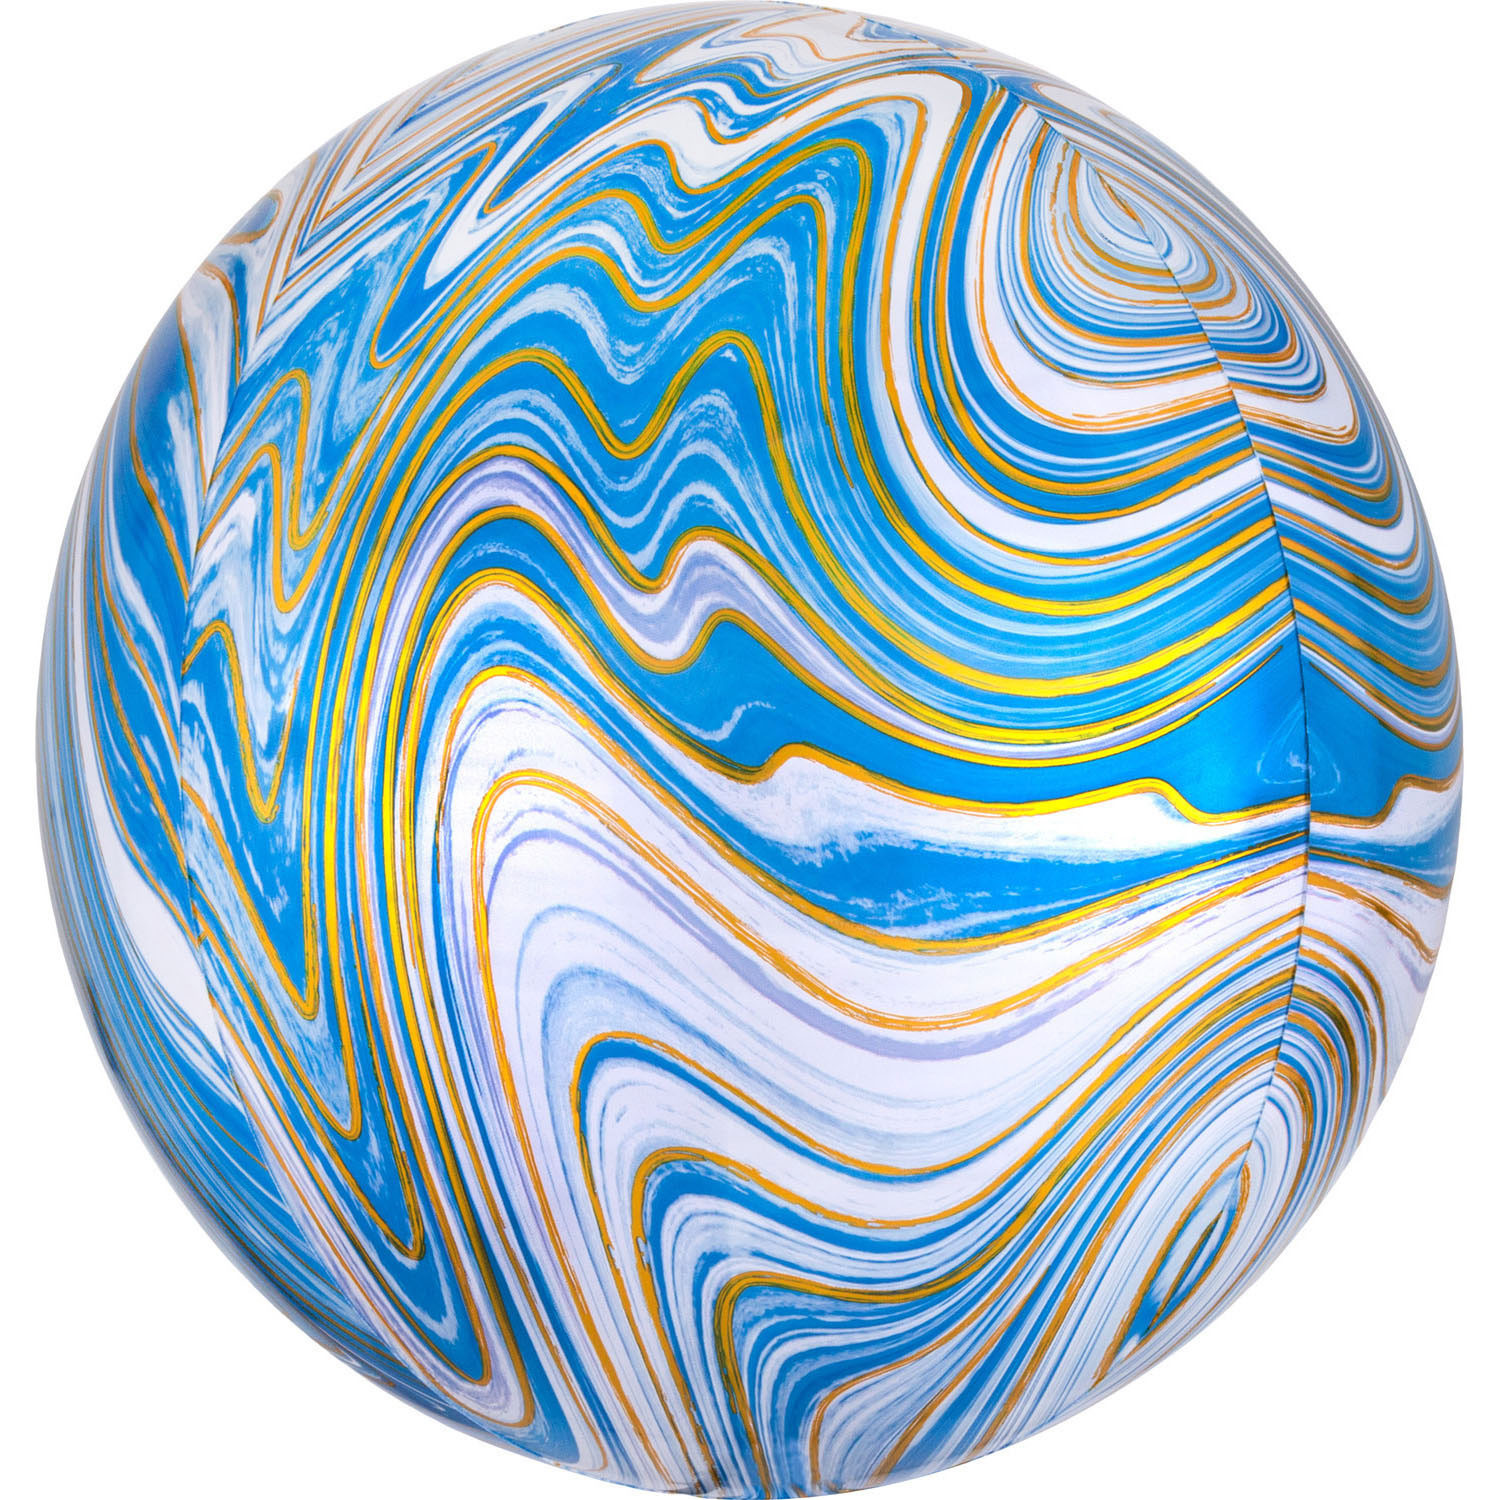 Balon foliowy Orbz - Kula Marble niebieska / 38x40 cm